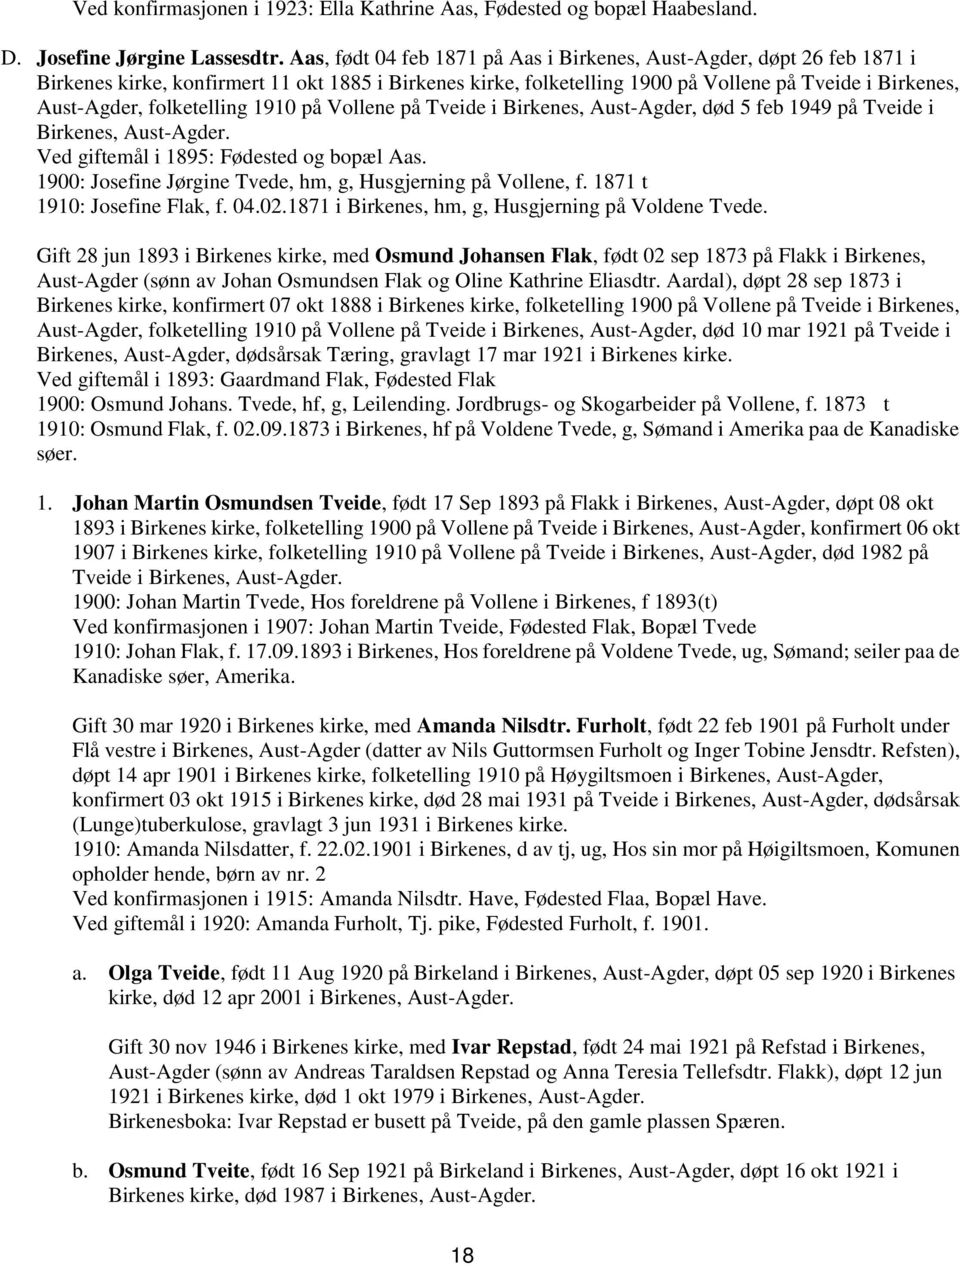 folketelling 1910 på Vollene på Tveide i Birkenes, Aust-Agder, død 5 feb 1949 på Tveide i Birkenes, Aust-Agder. Ved giftemål i 1895: Fødested og bopæl Aas.